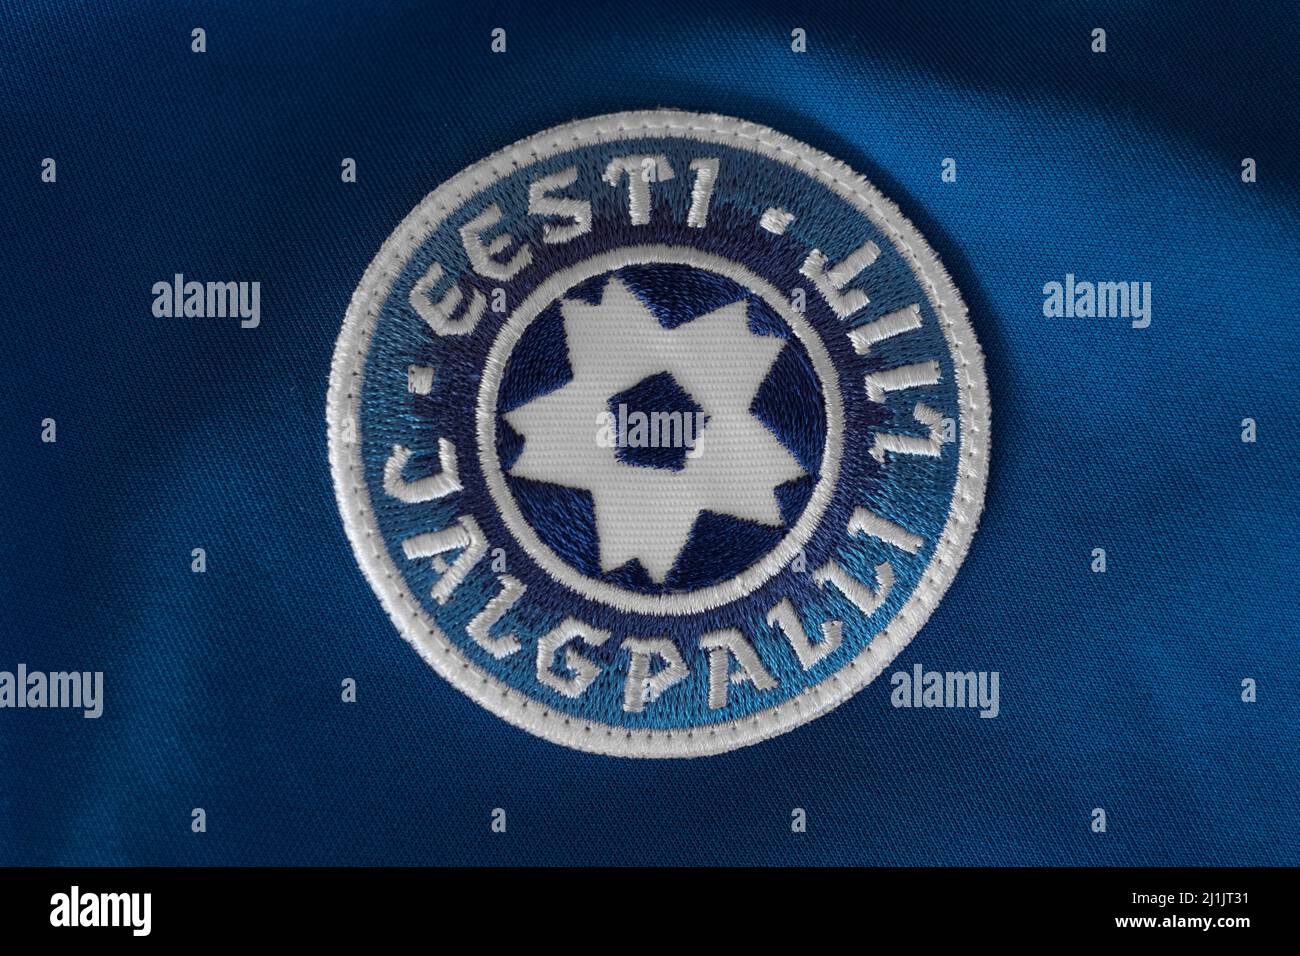 Eesti Jalgpalli Liit (Estnischer Fußballverband)-Emblem auf einem blauen Trikot der Nationalmannschaft. Logo des estnischen Fußballverbands. Stockfoto